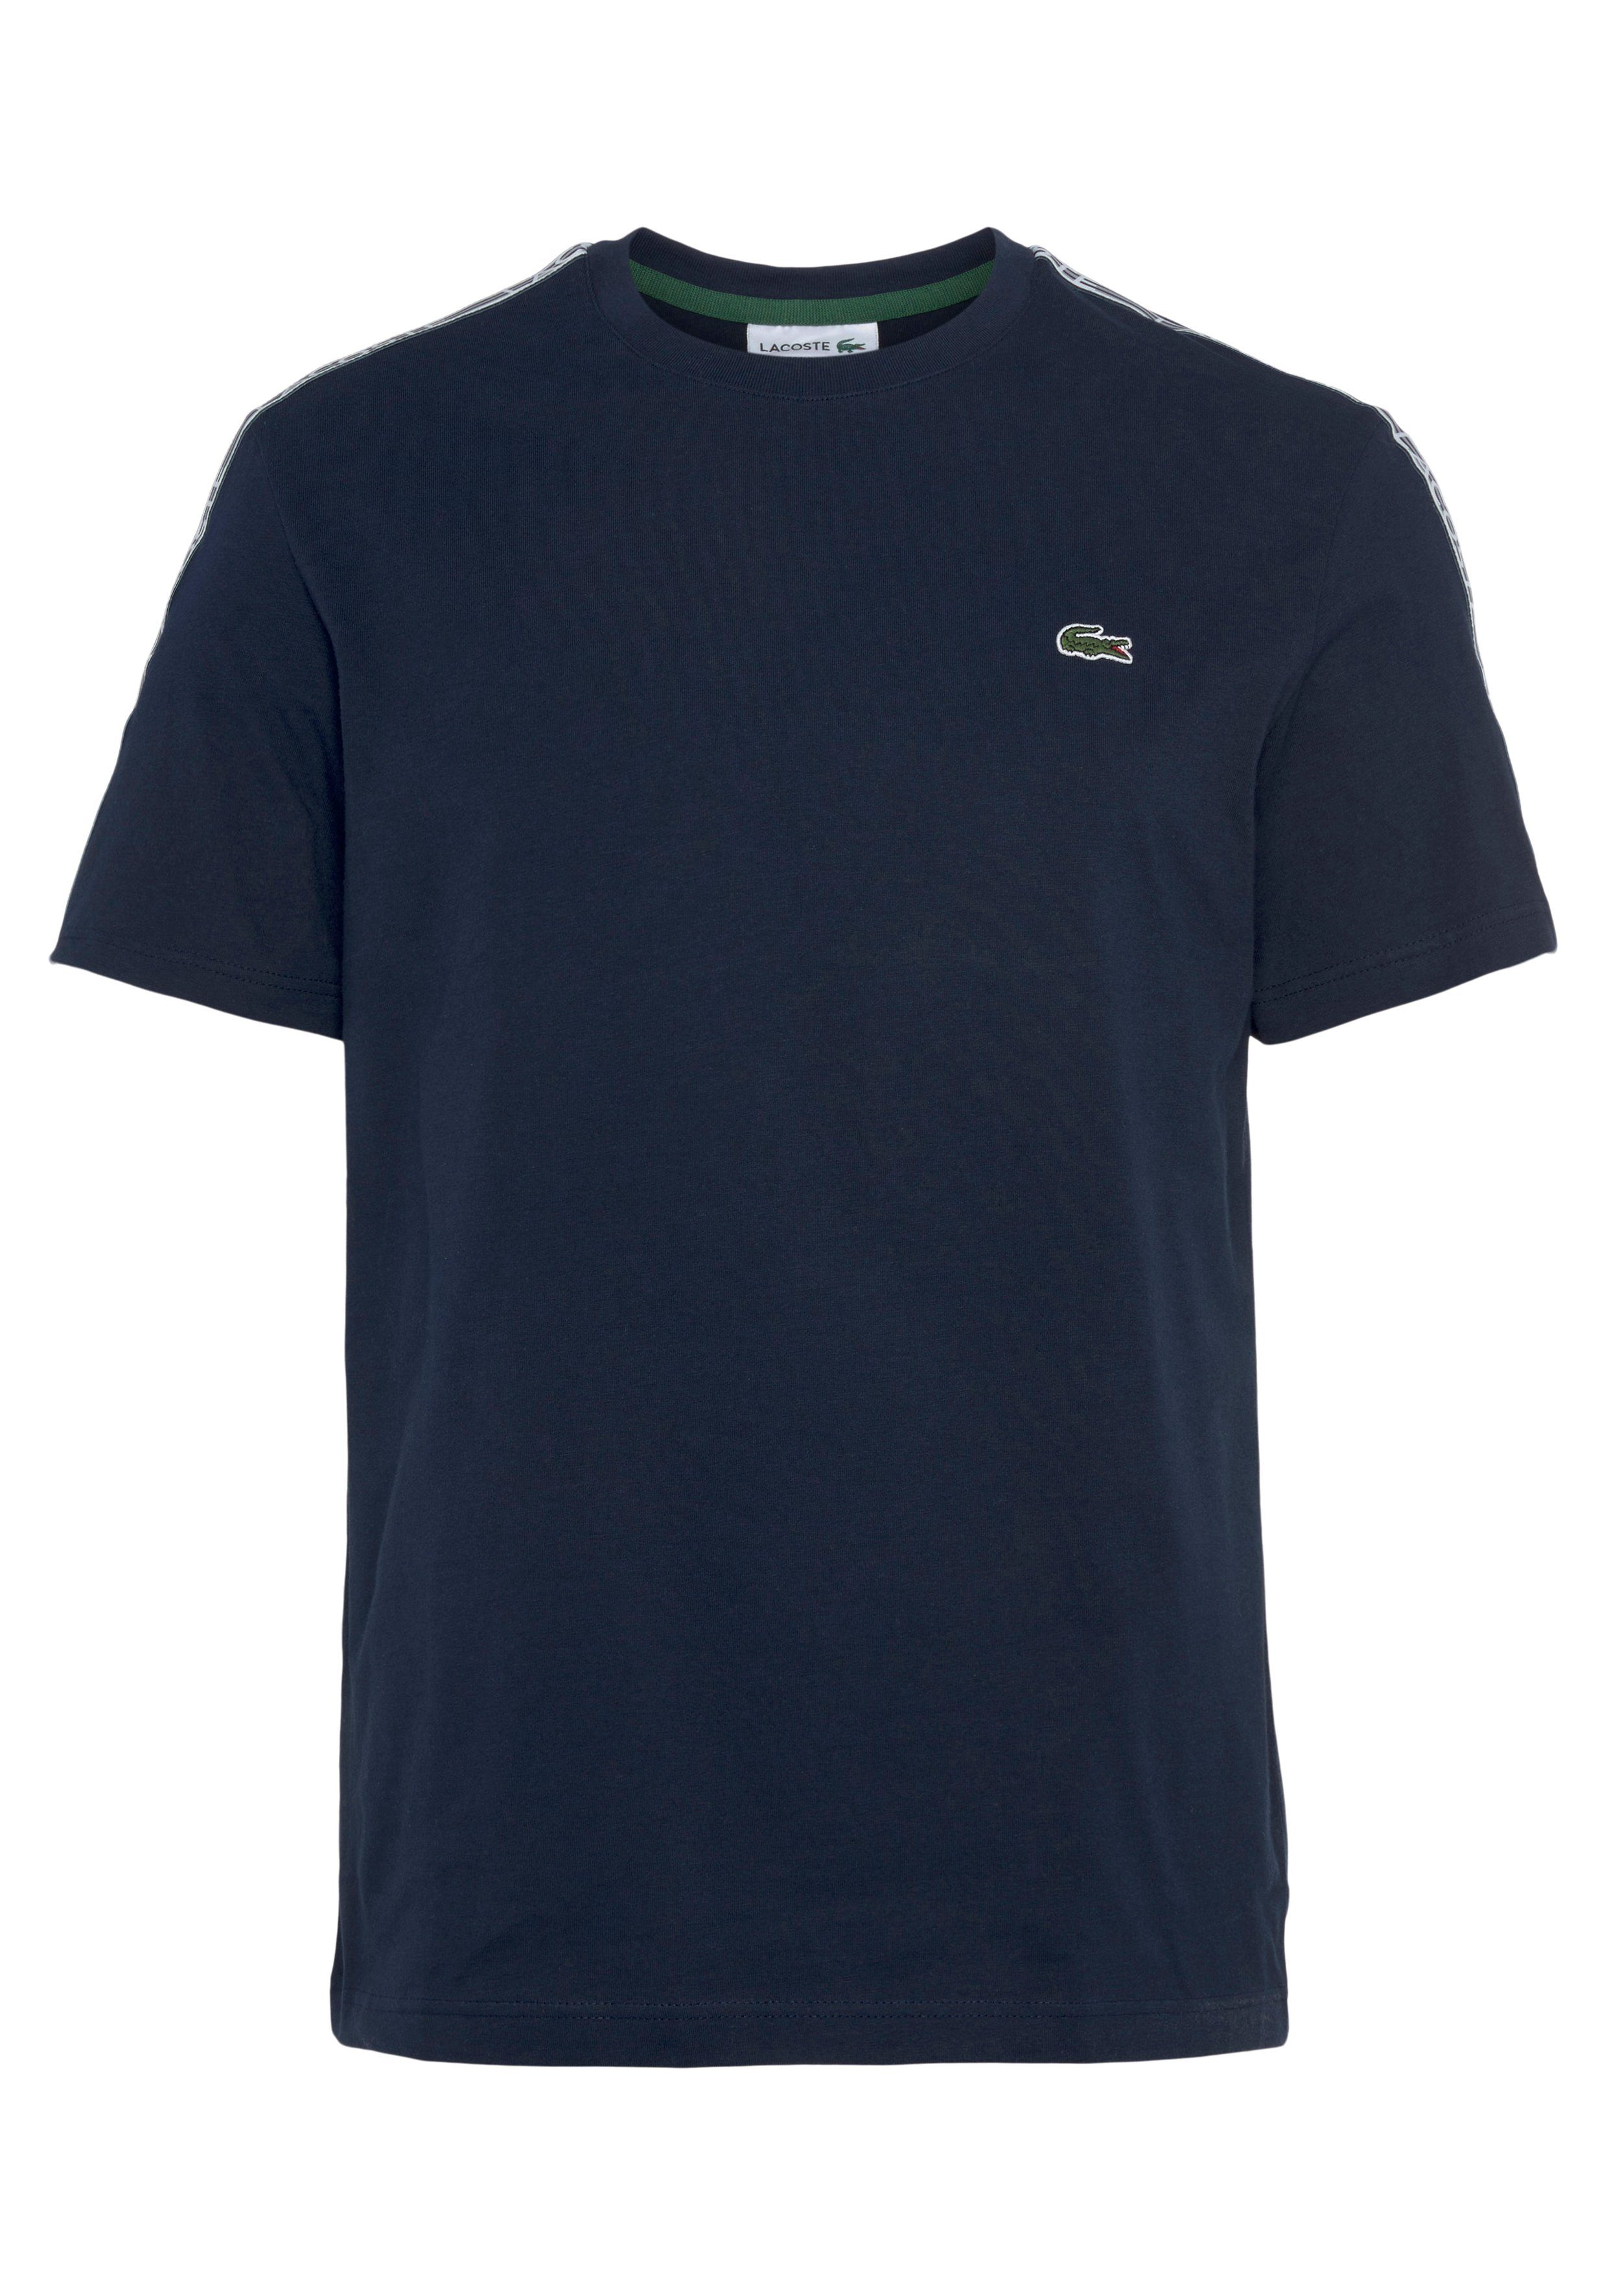 Lacoste T-Shirt mit beschriftetem Kontrastband an den Schultern navy blue | 